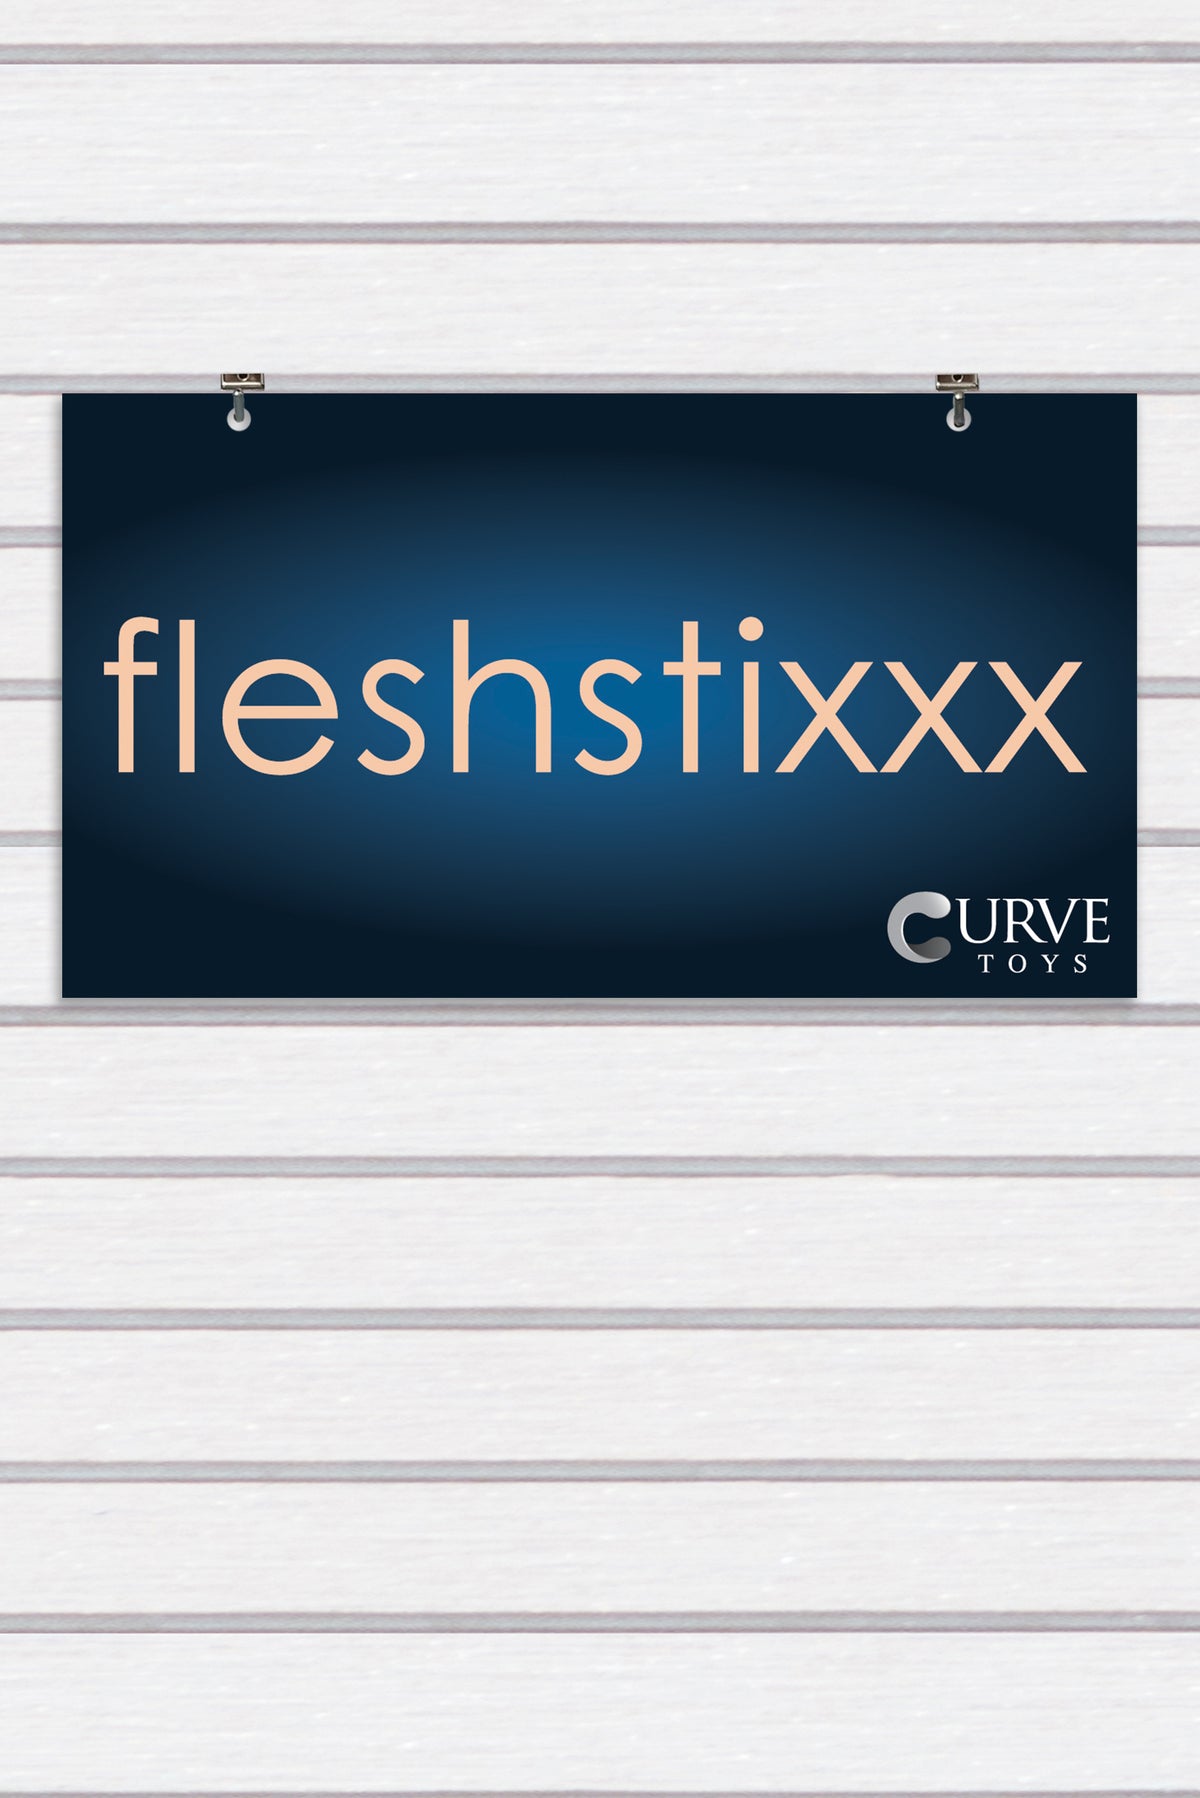 Fleshstixxx Display Sign